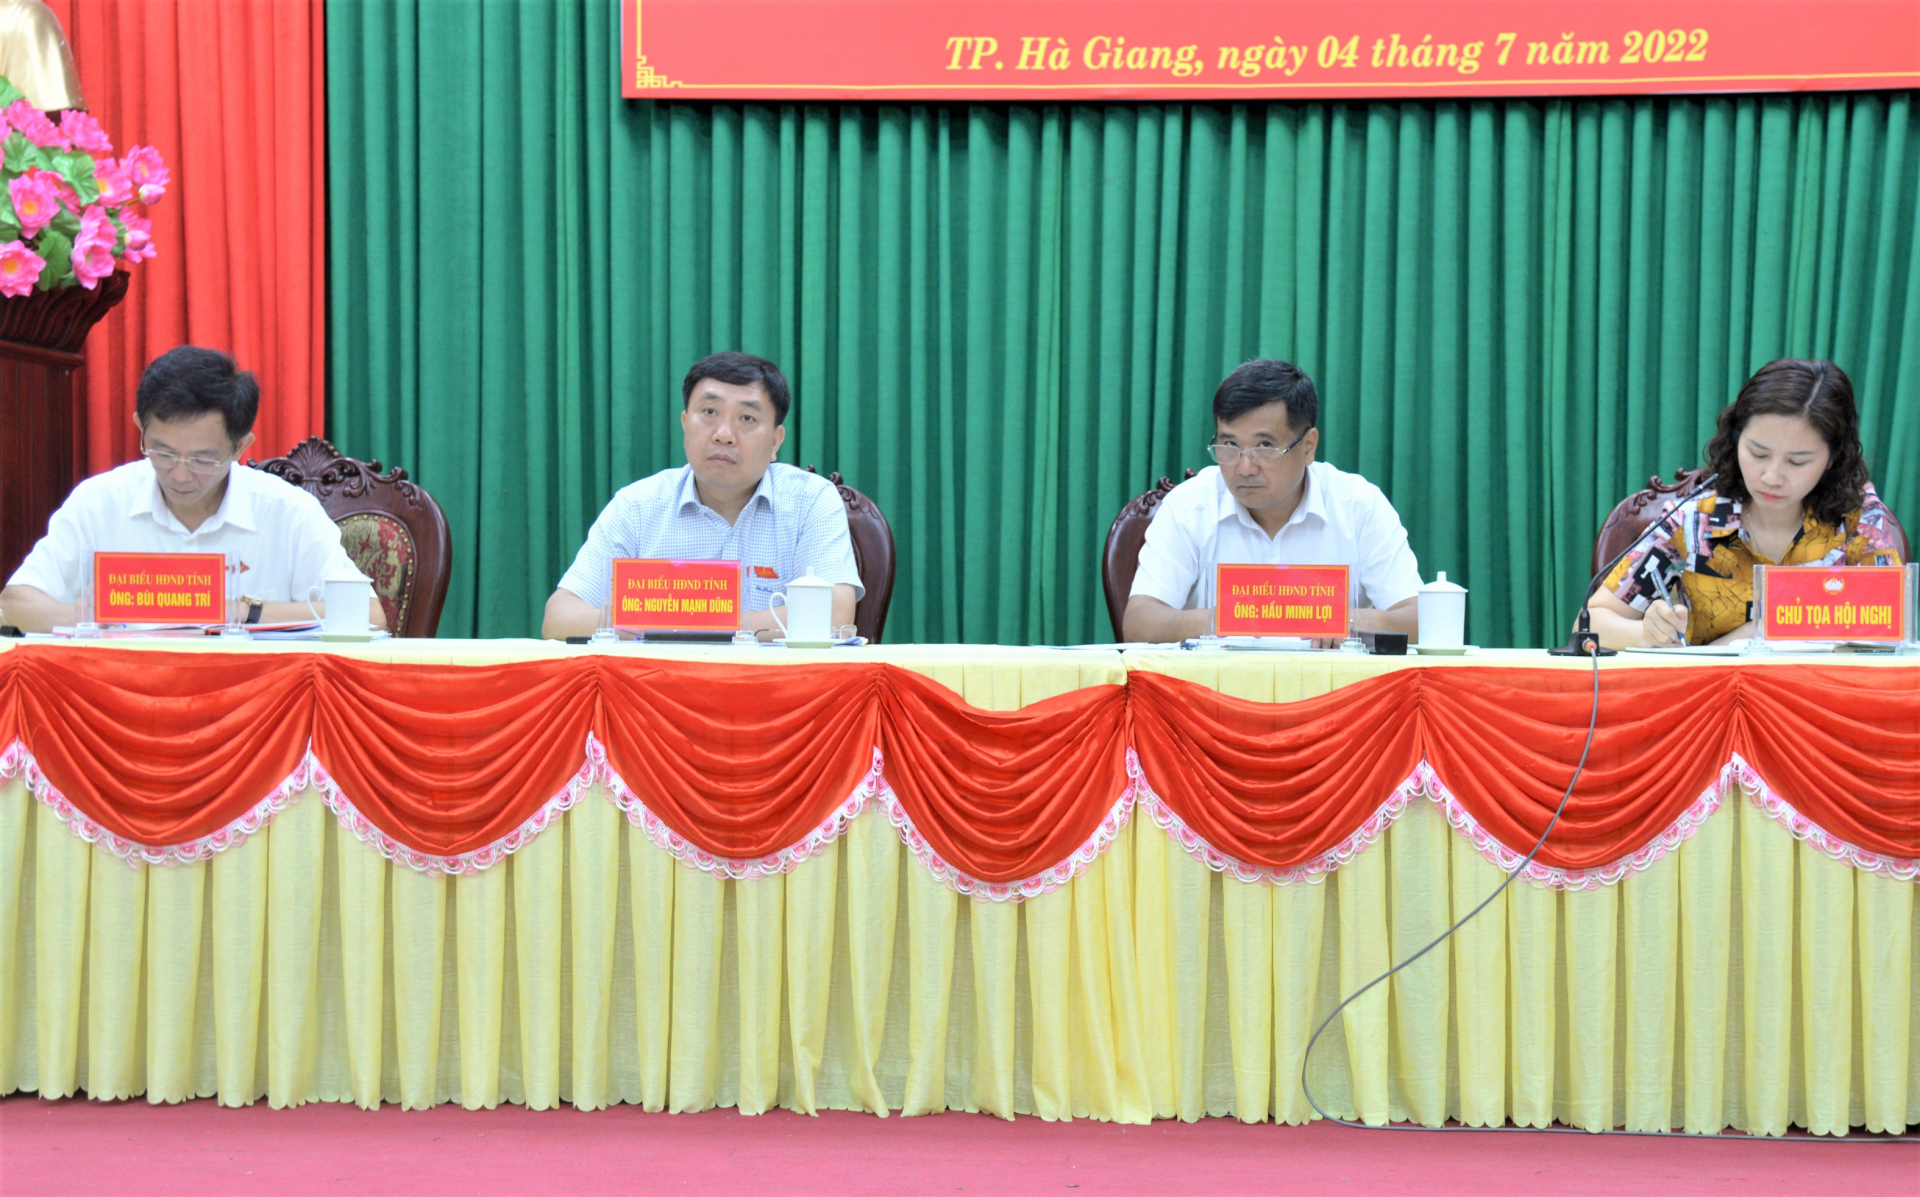 Tổ đại biểu HĐND tỉnh tiếp xúc cử tri tại thành phố Hà Giang